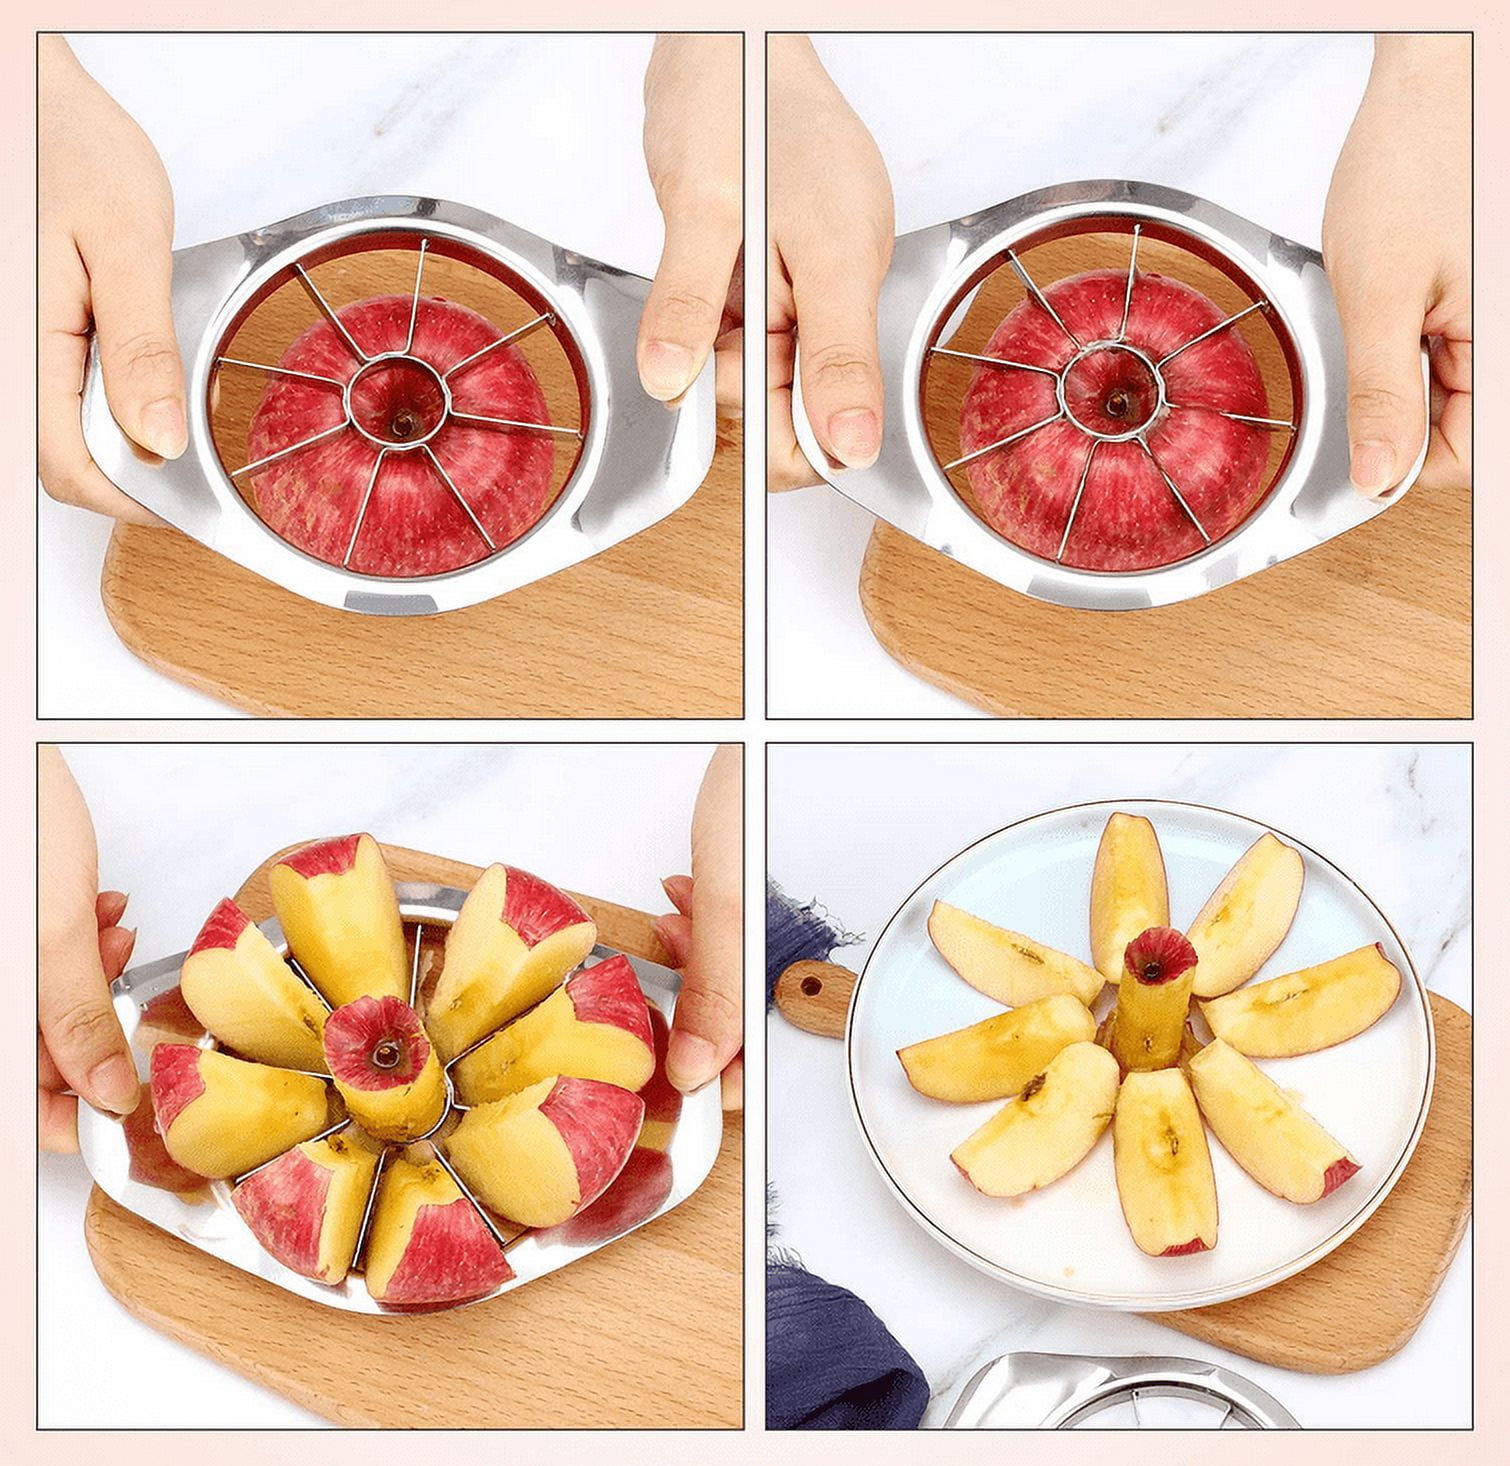 Seekfunning Apple Slicer Corer, 16-Slice Durable Heavy Duty Apple Slicer Corer, Cutter, Divider, Wedger, Integrated Design Fruits & Vegetables Slicer